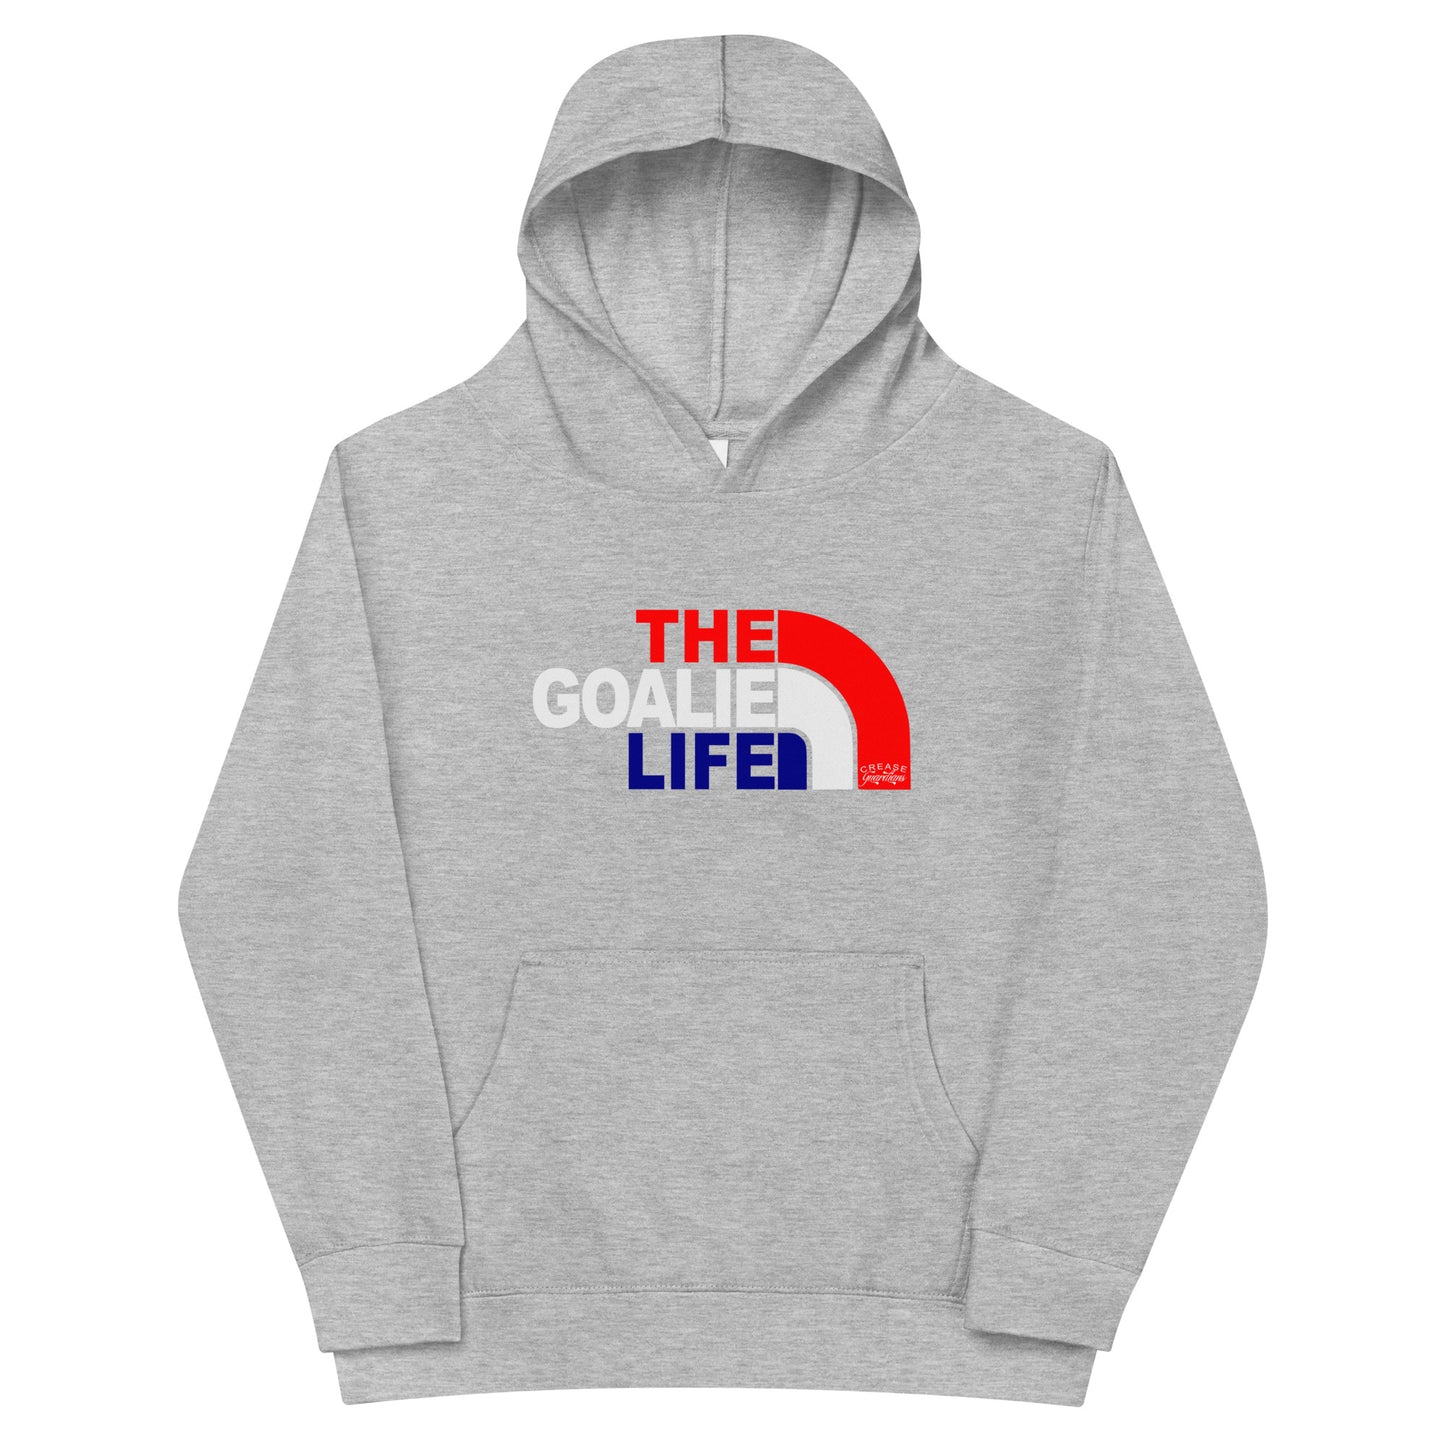 The Goalie Life Youth fleece hoodie